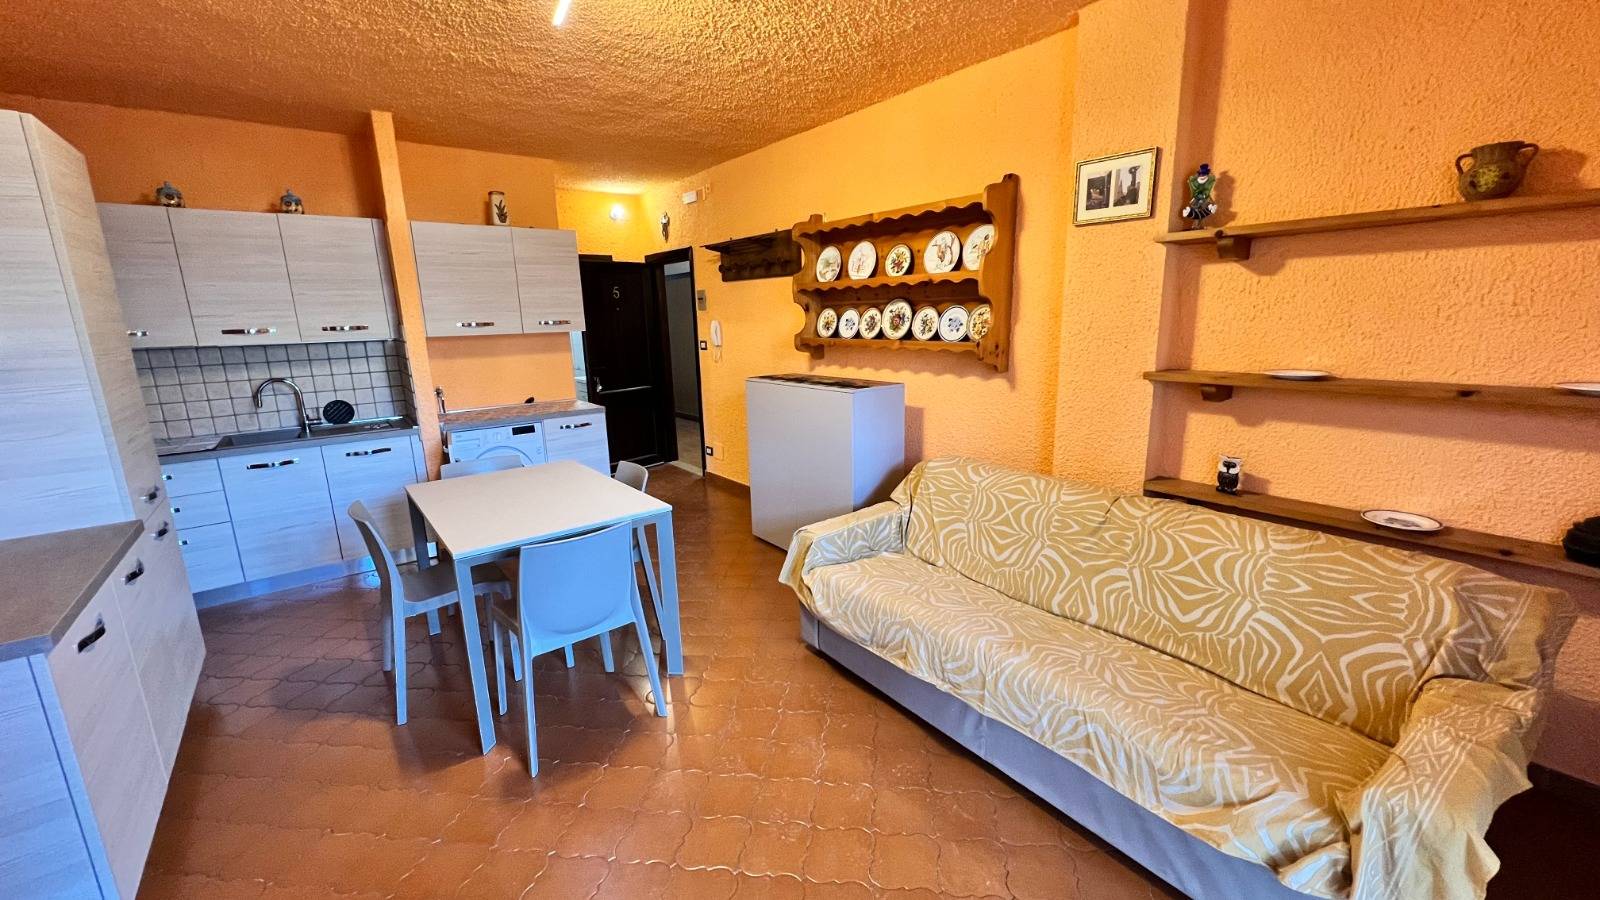 Appartamento in vendita a Roccaforte Mondovì, 2 locali, zona sia, prezzo € 38.000 | PortaleAgenzieImmobiliari.it